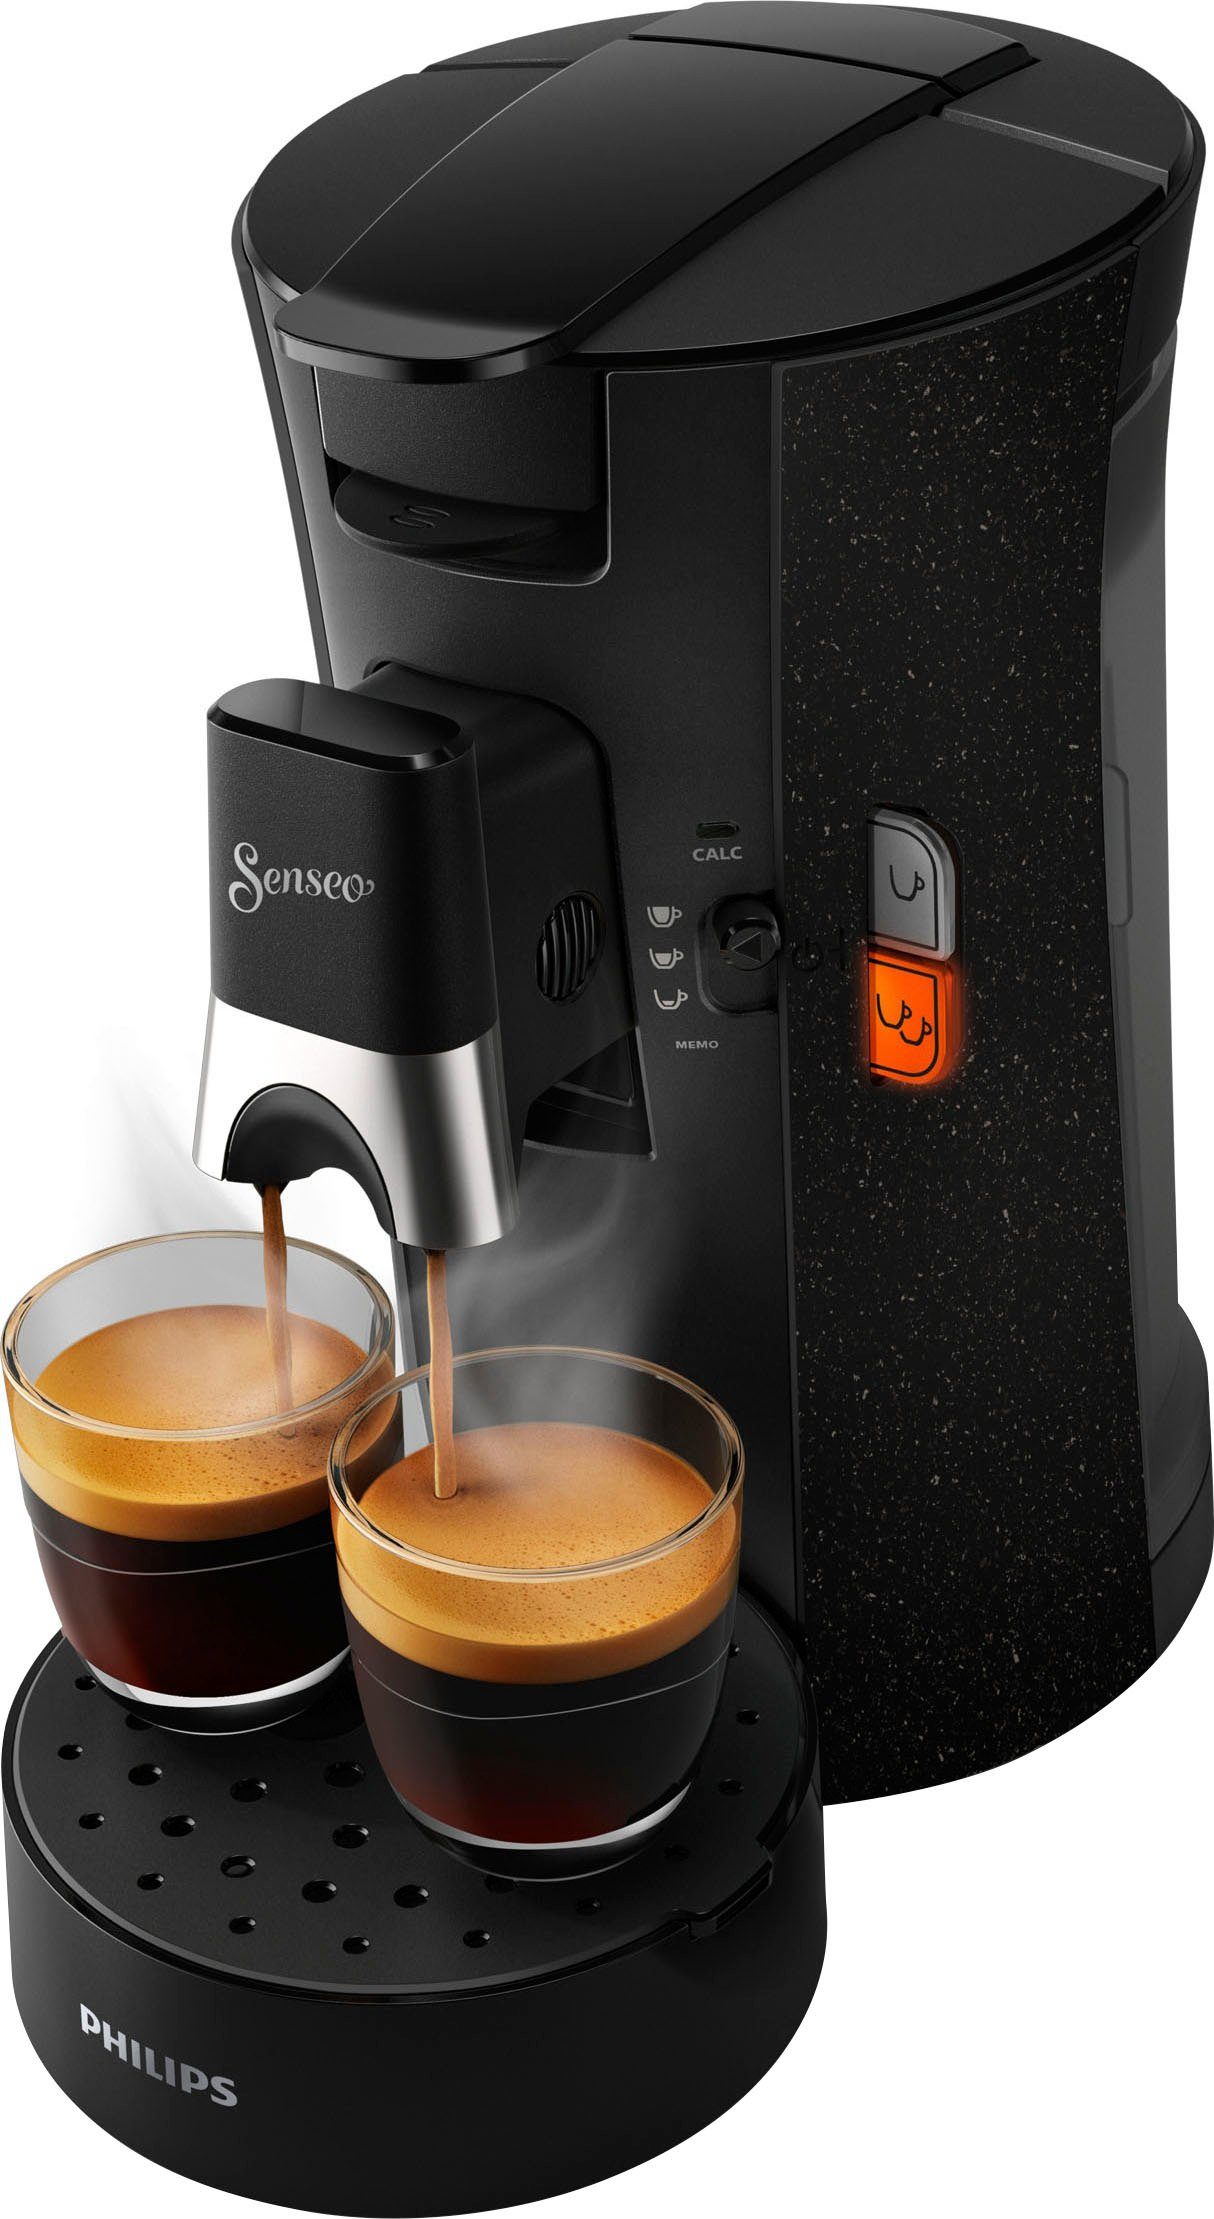 Philips Senseo Kaffeepadmaschine Select ECO CSA240/20, inkl. Gratis-Zugaben  im Wert von € 14,- UVP